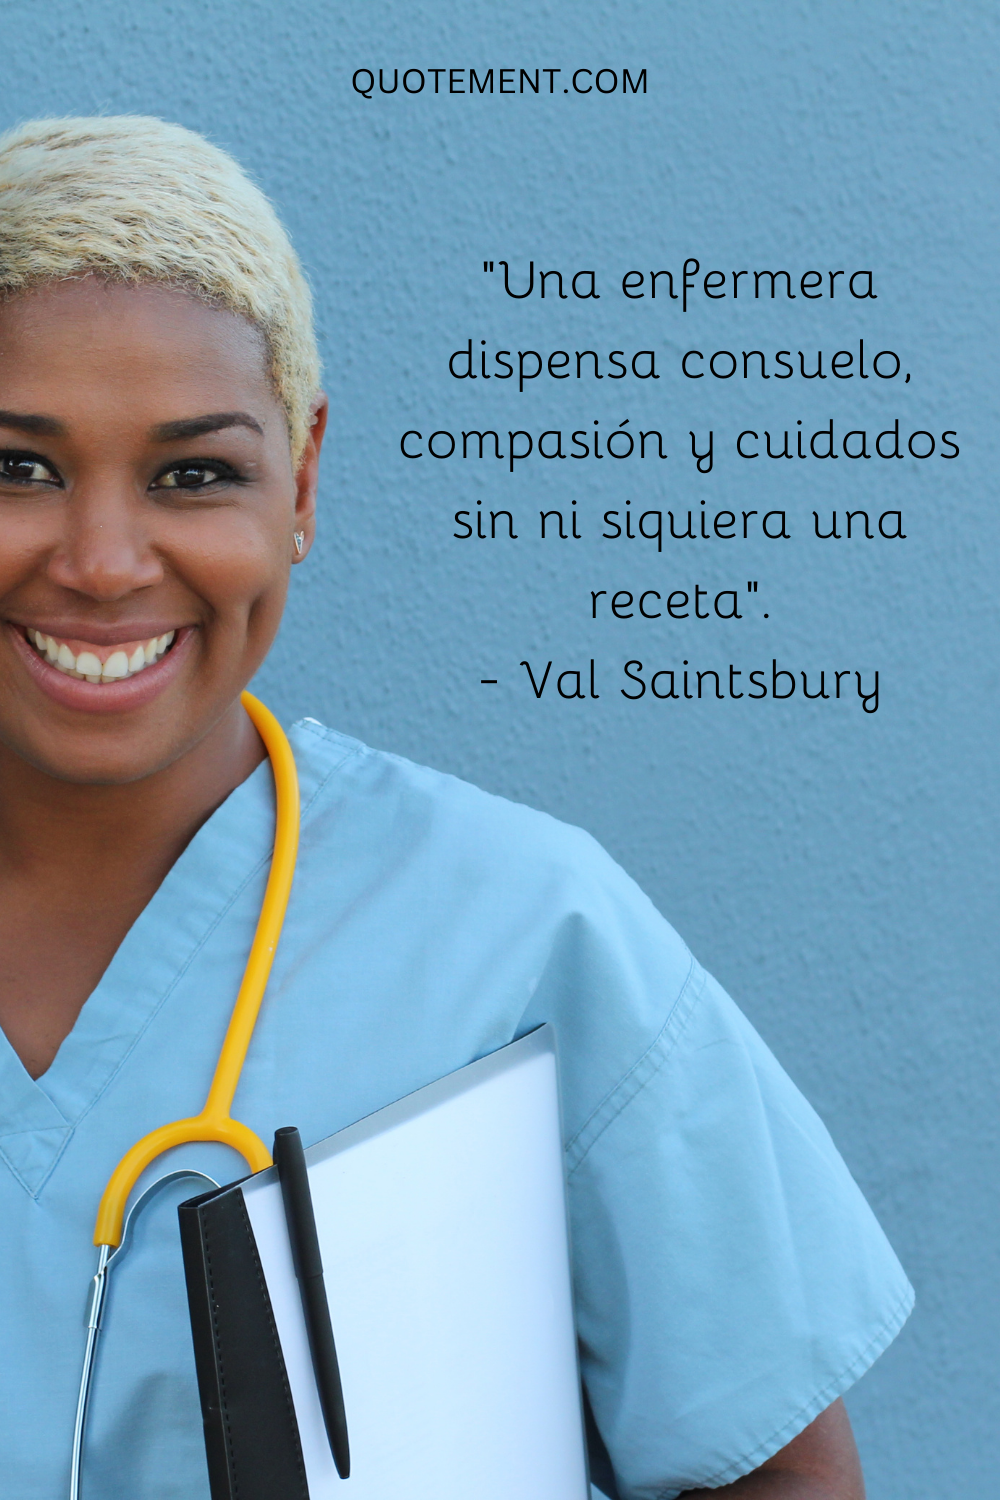 "Una enfermera dispensa consuelo, compasión y cariño sin ni siquiera una receta". - Val Saintsbury